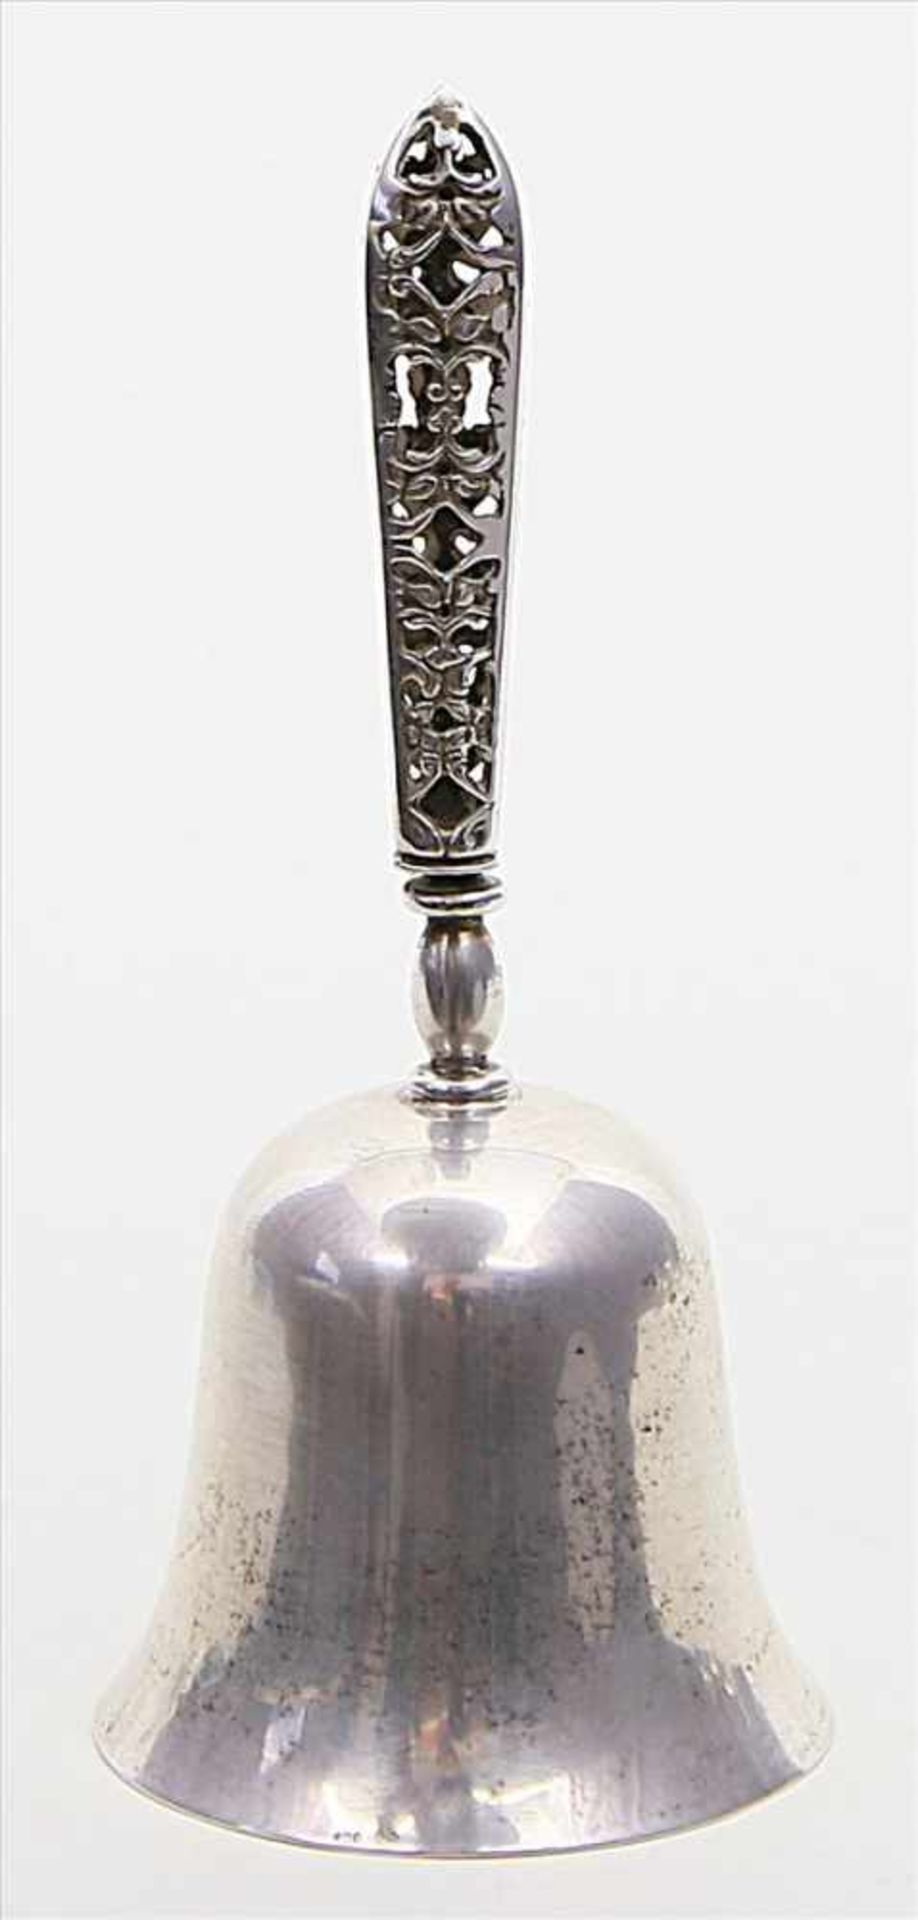 Tischglocke.800/000 Silber, 64 g. Glatte Glocke mit dreipassigem, durchbrochen gearbeiteten Griff.